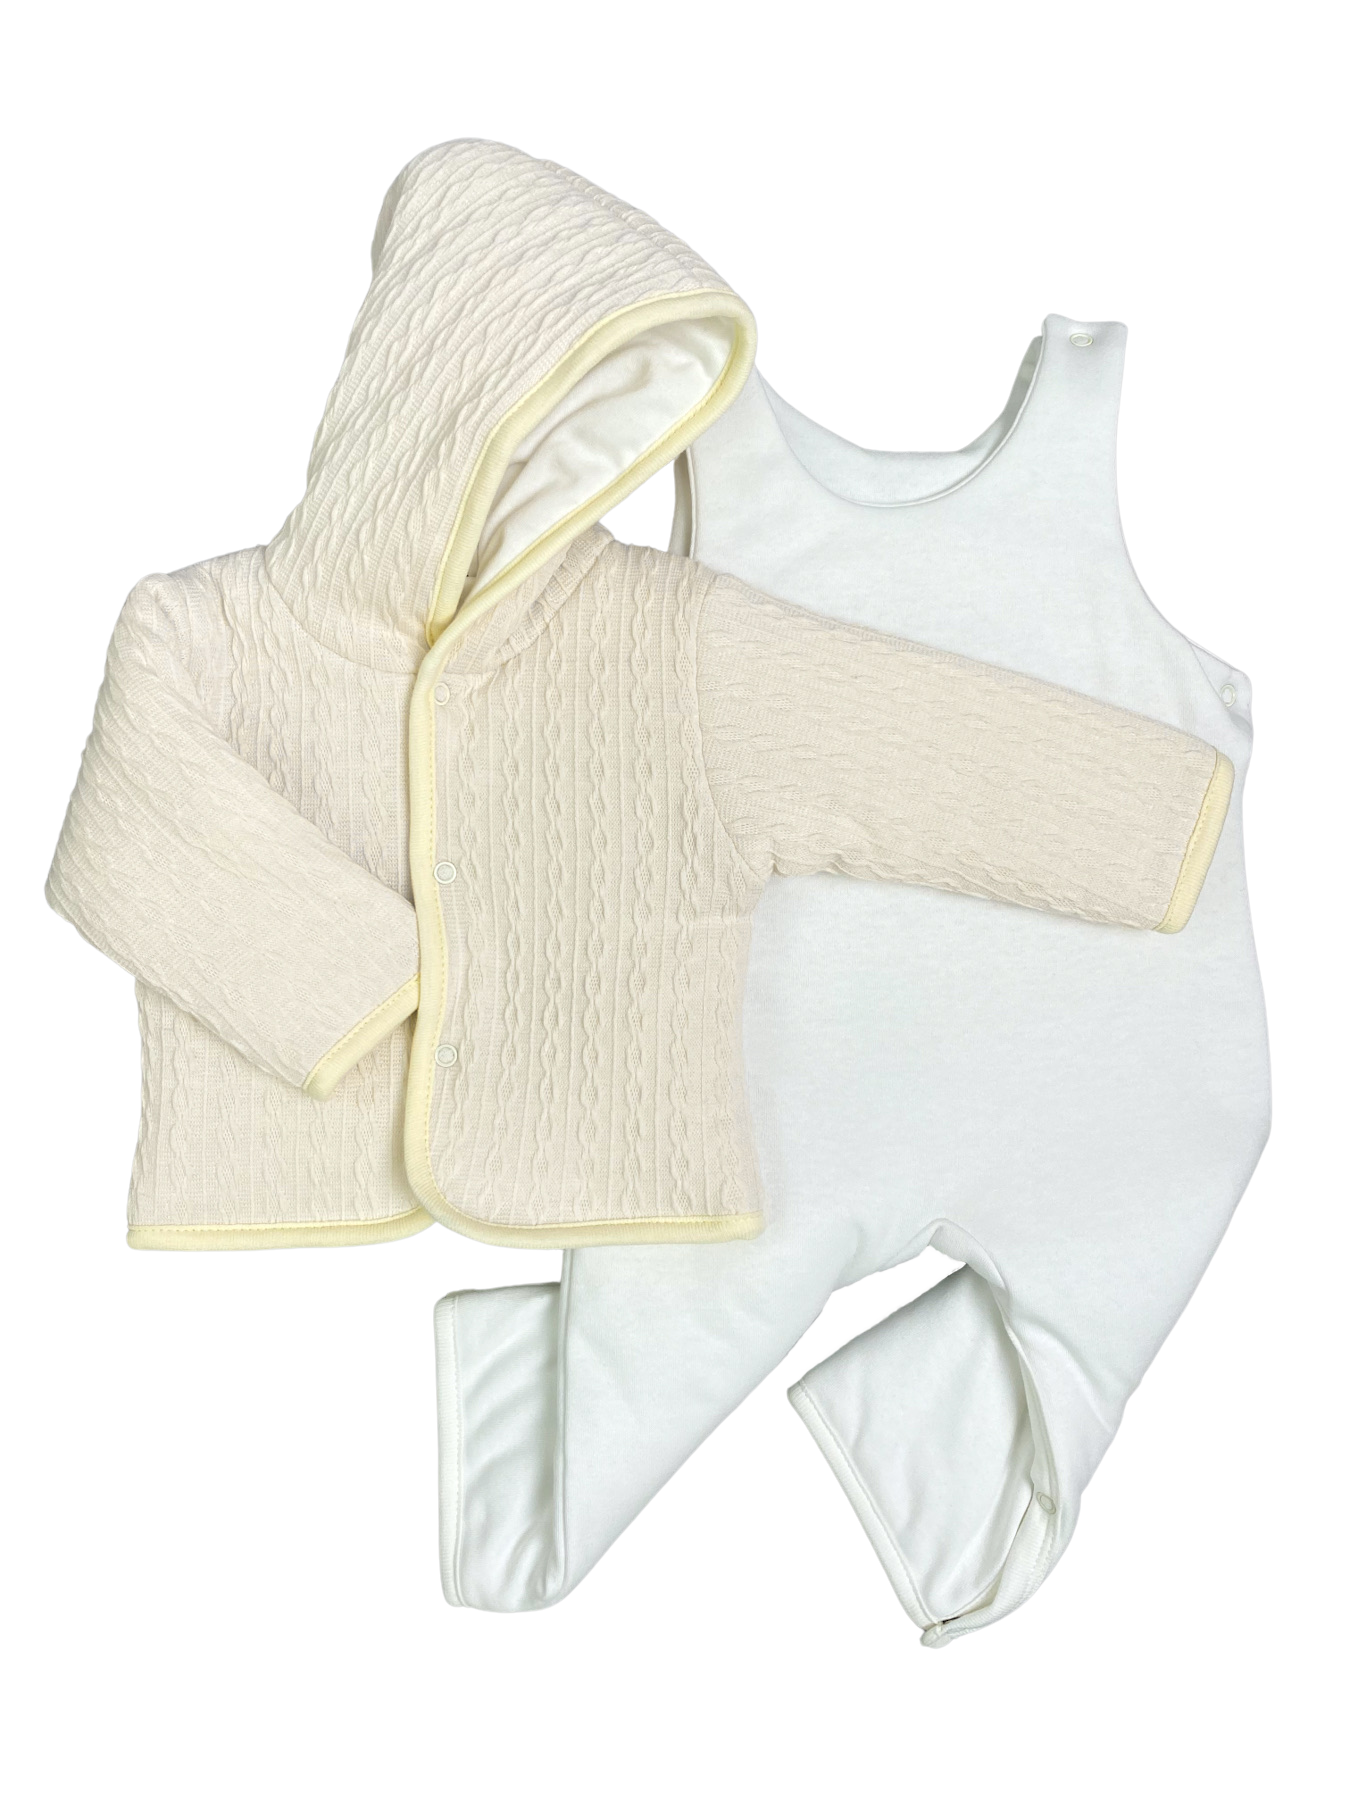 Комплект верхней одежды Clariss Вязаный микс, бежевый; белый, 62